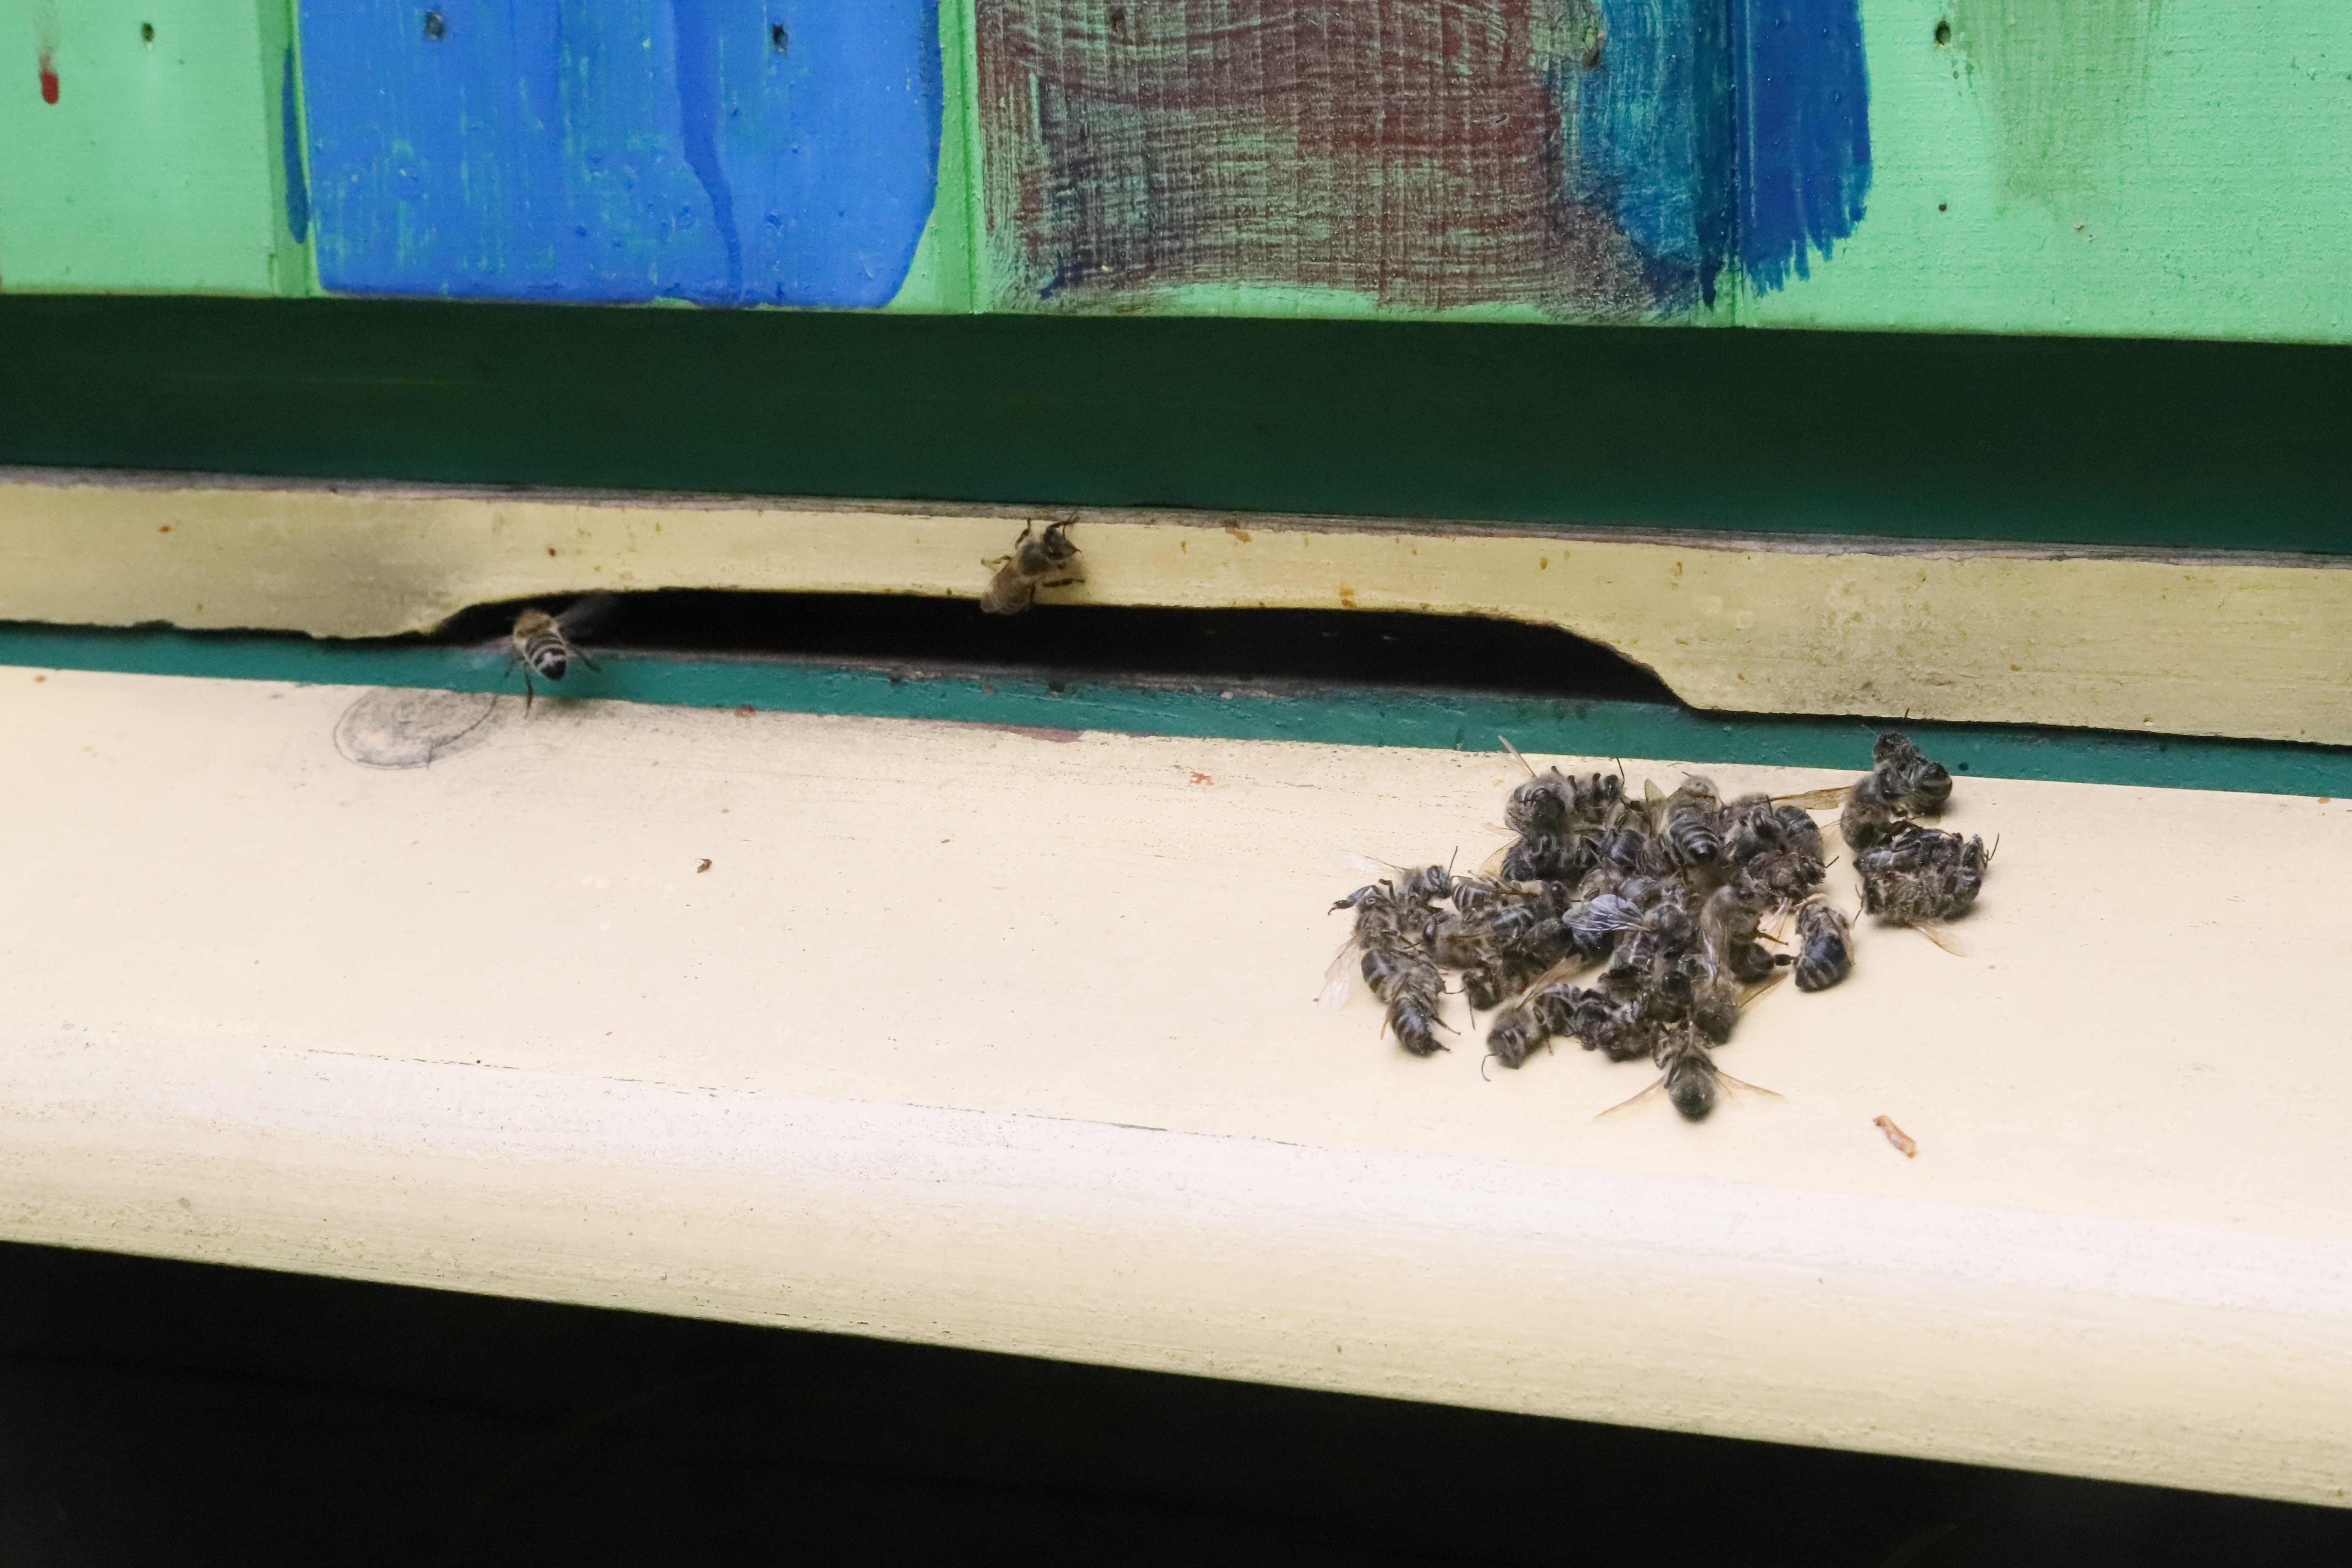 Martwe pszczoły znalezione na wylotku ula, które z powodu obcego zapachu nie zostały do niego wpuszczone przez pszczoły ulowe. Fot. Marek Szebesta.